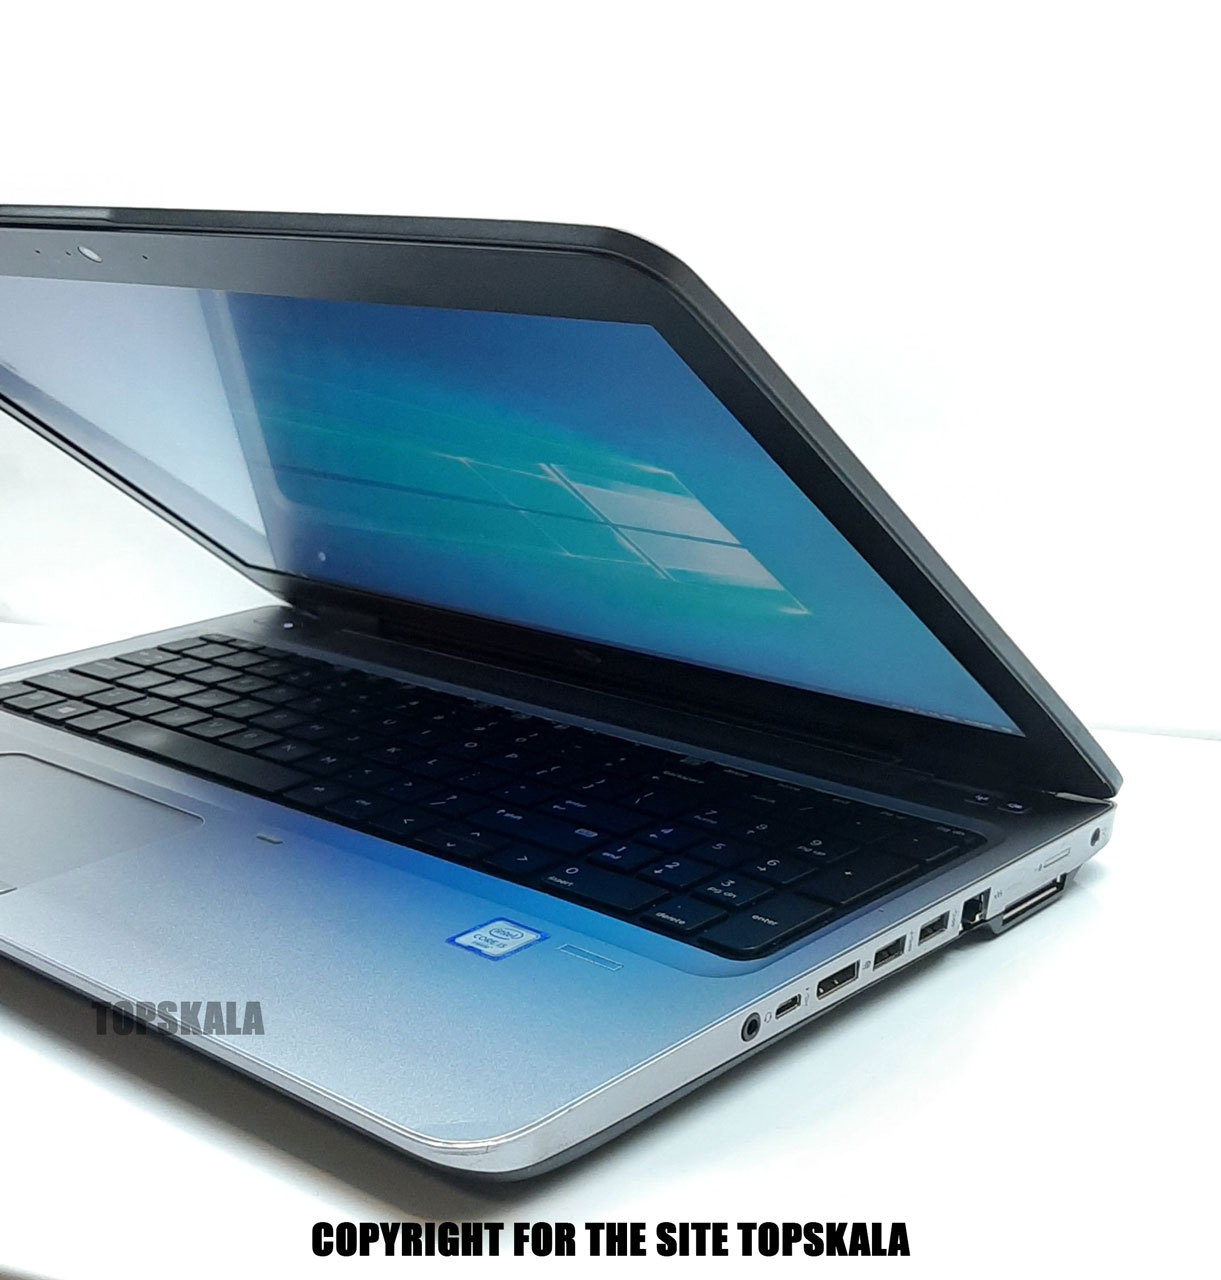 لپ تاپ استوک اچ پی مدل HP PROBOOK 650 G2 با مشخصات i5-6th-8GB-500GB-HDD-4GB-intel-HD-530laptop-stock-hp-model-probook-g2-i5-6th-8gb-500gb-4gb-intel-hd-530